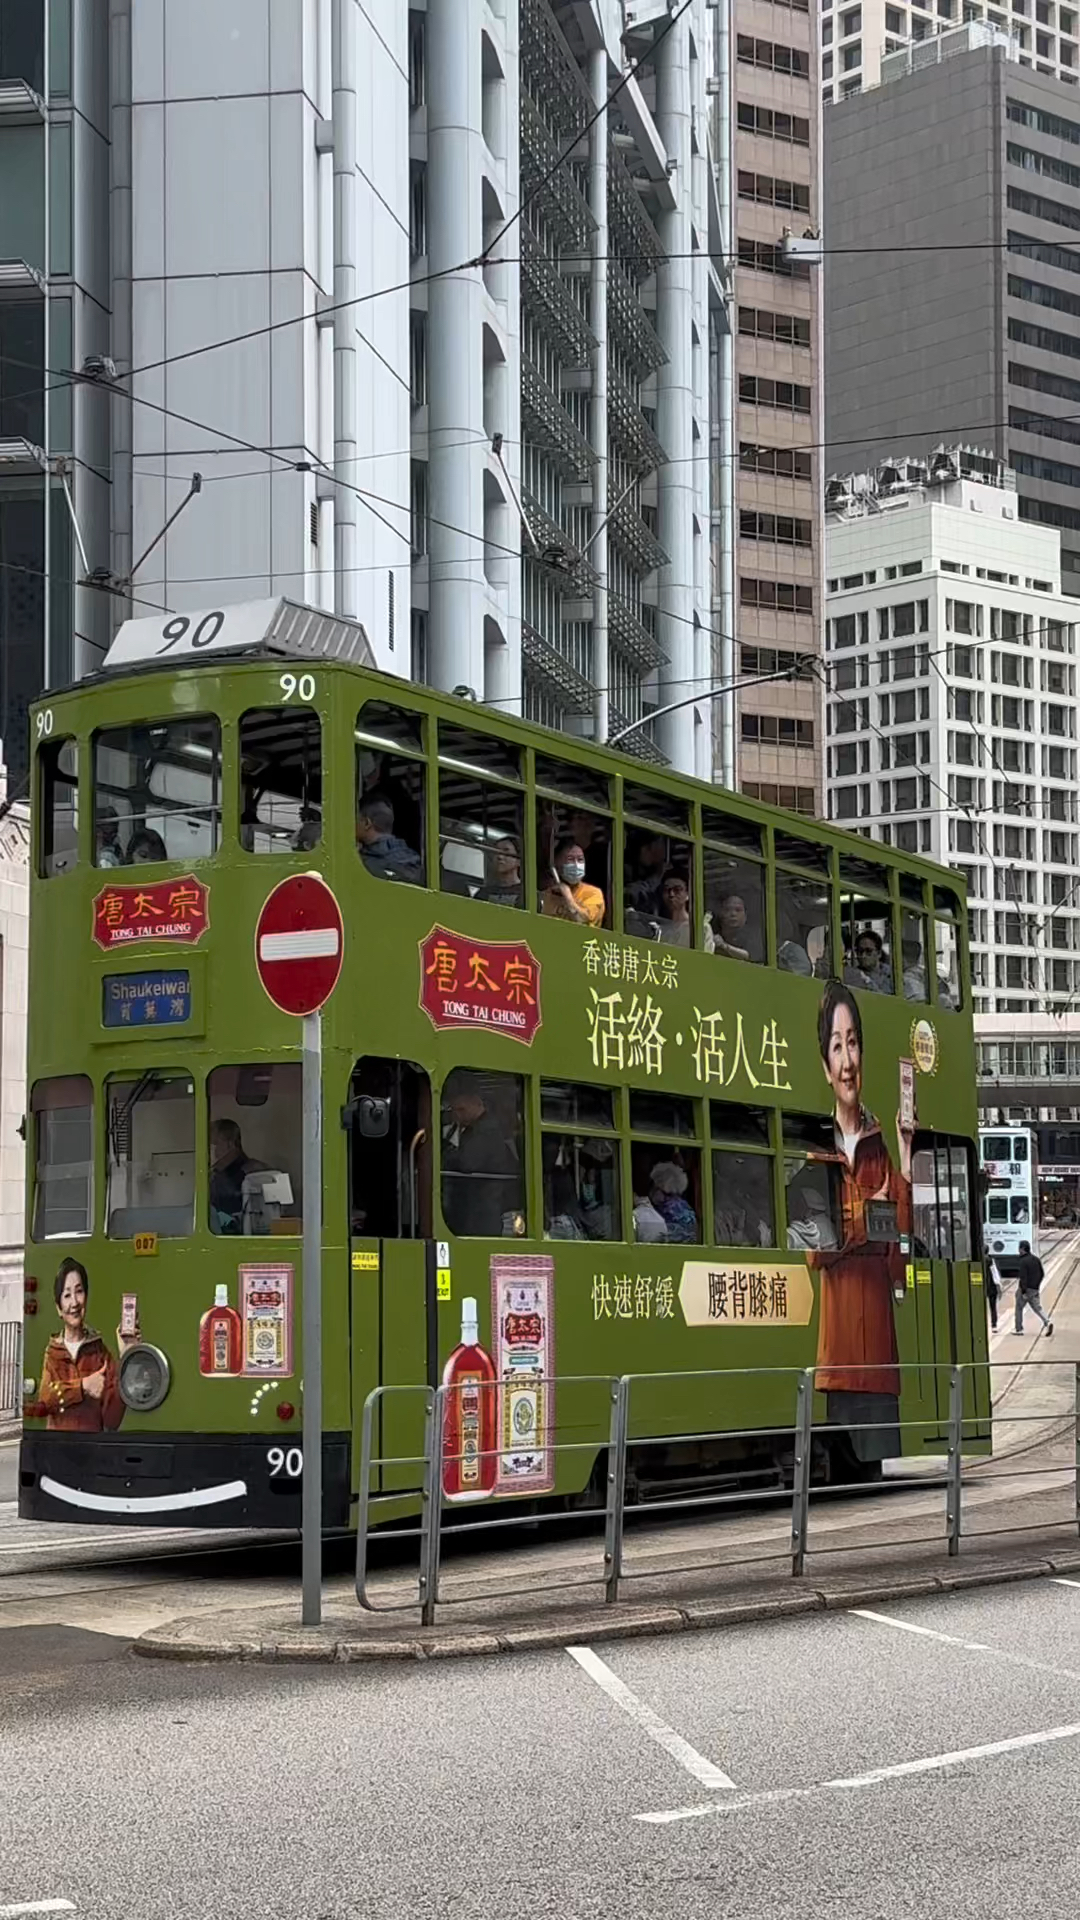 香港印象实拍穿梭在香港熙熙攘攘街道的叮叮车仿佛穿越时空一样